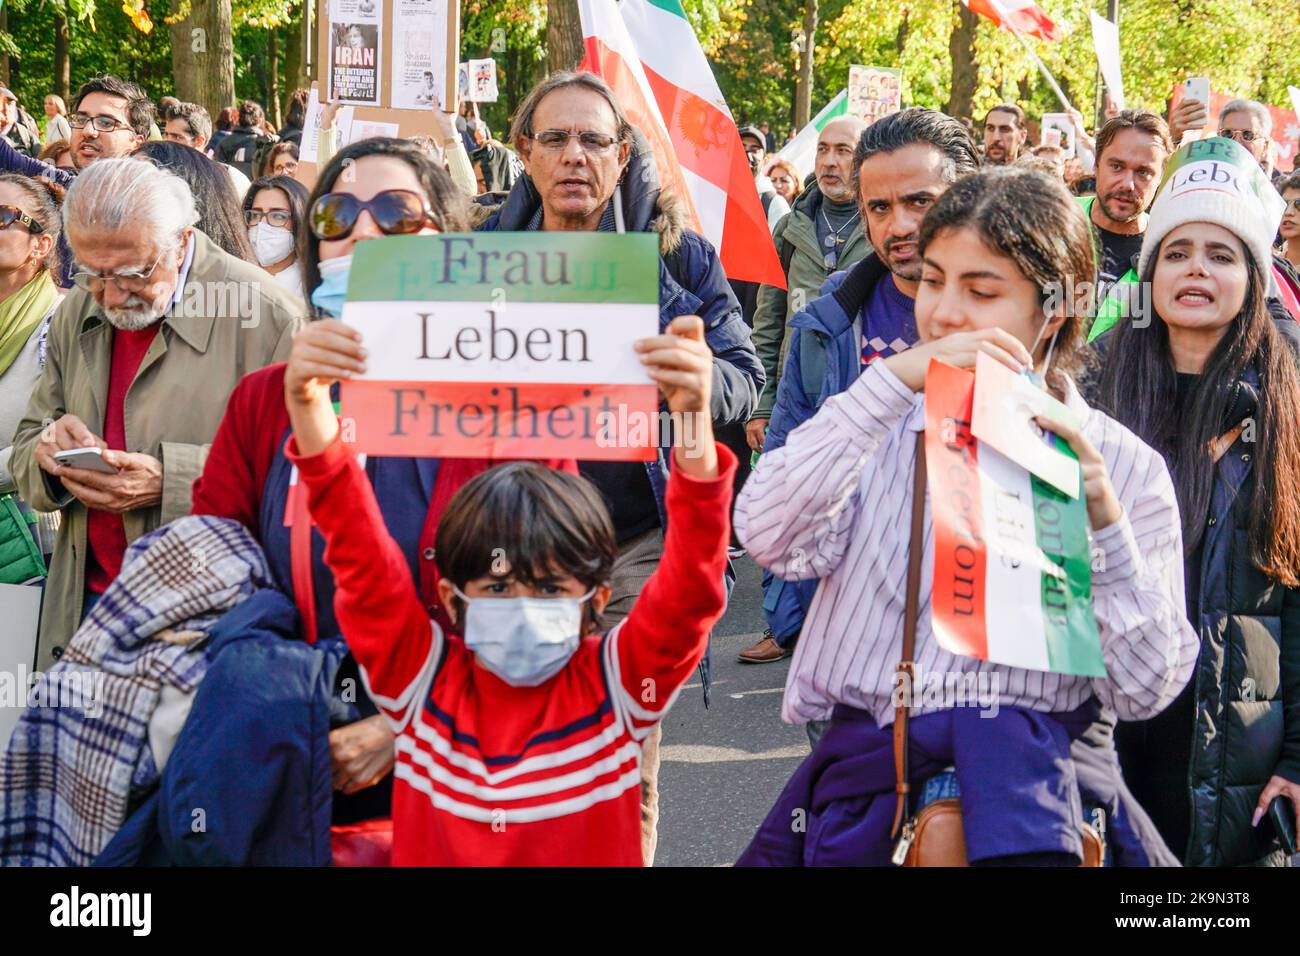 Großdemo gegen das régime der Mullahs im Iran. Auslöser der Demonstrationen war der Tod der 22-jährigen Masha Amini. 22.10.2022, Berlin-Mitte, Tierg Banque D'Images